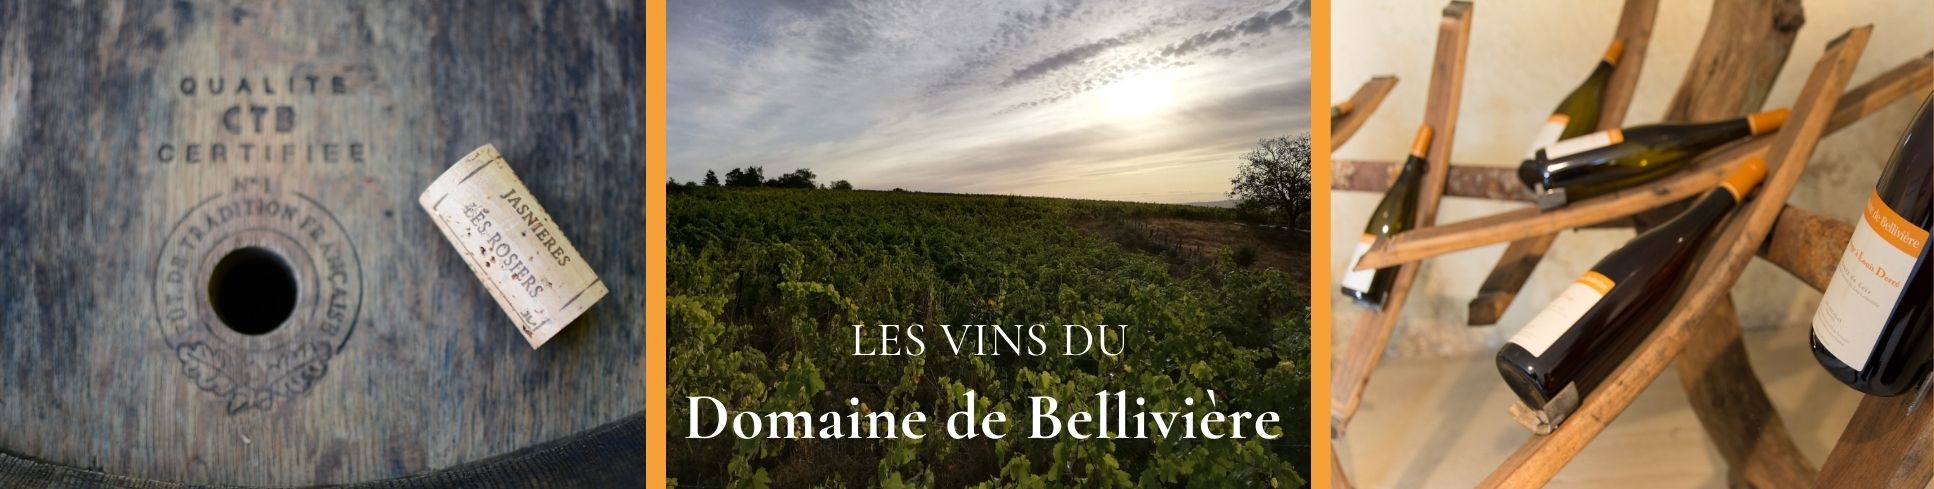 Les vins du Domaine de Bellivière 